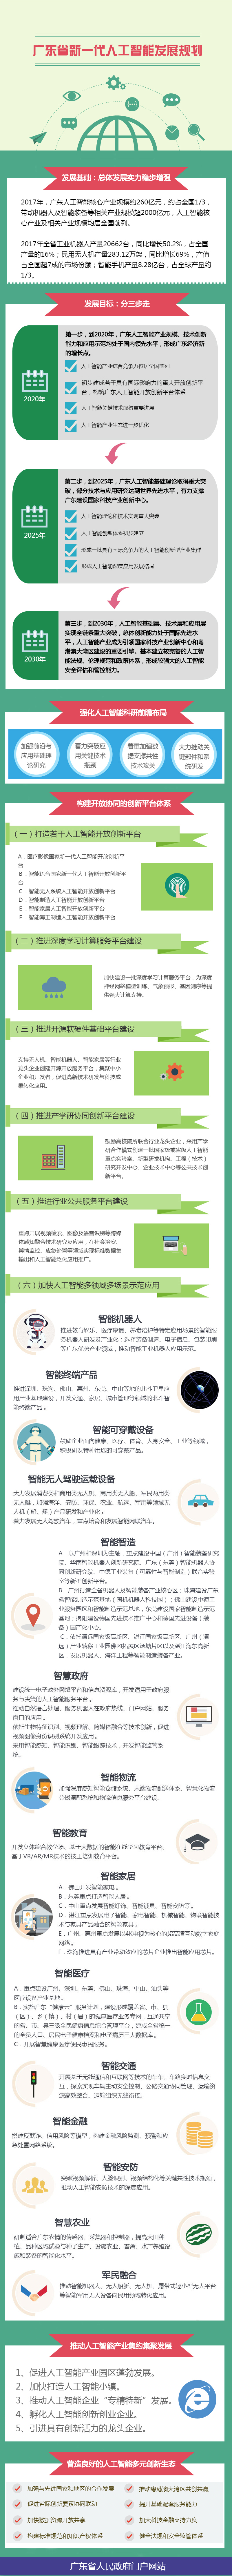 图解：广东省新一代人工智能发展规划.jpg